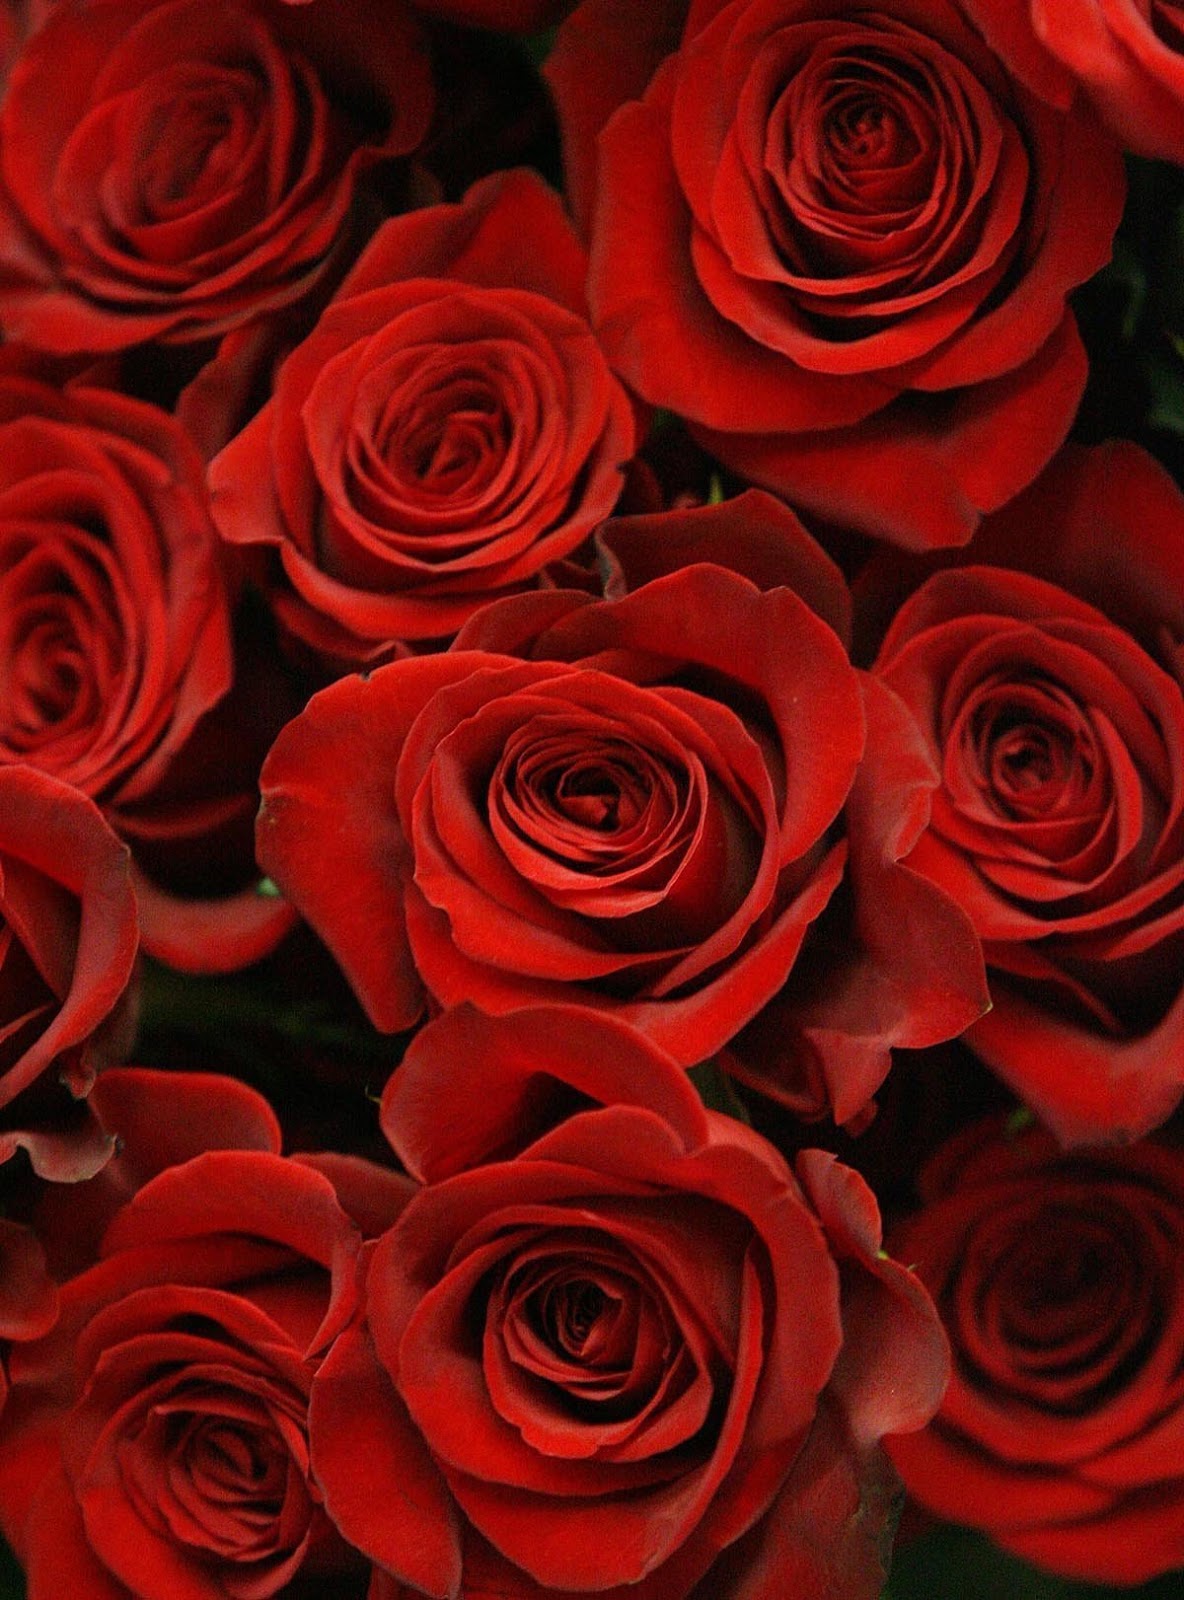 발렌타인 데이 장미 벽지,꽃,장미,정원 장미,꽃 피는 식물,빨간